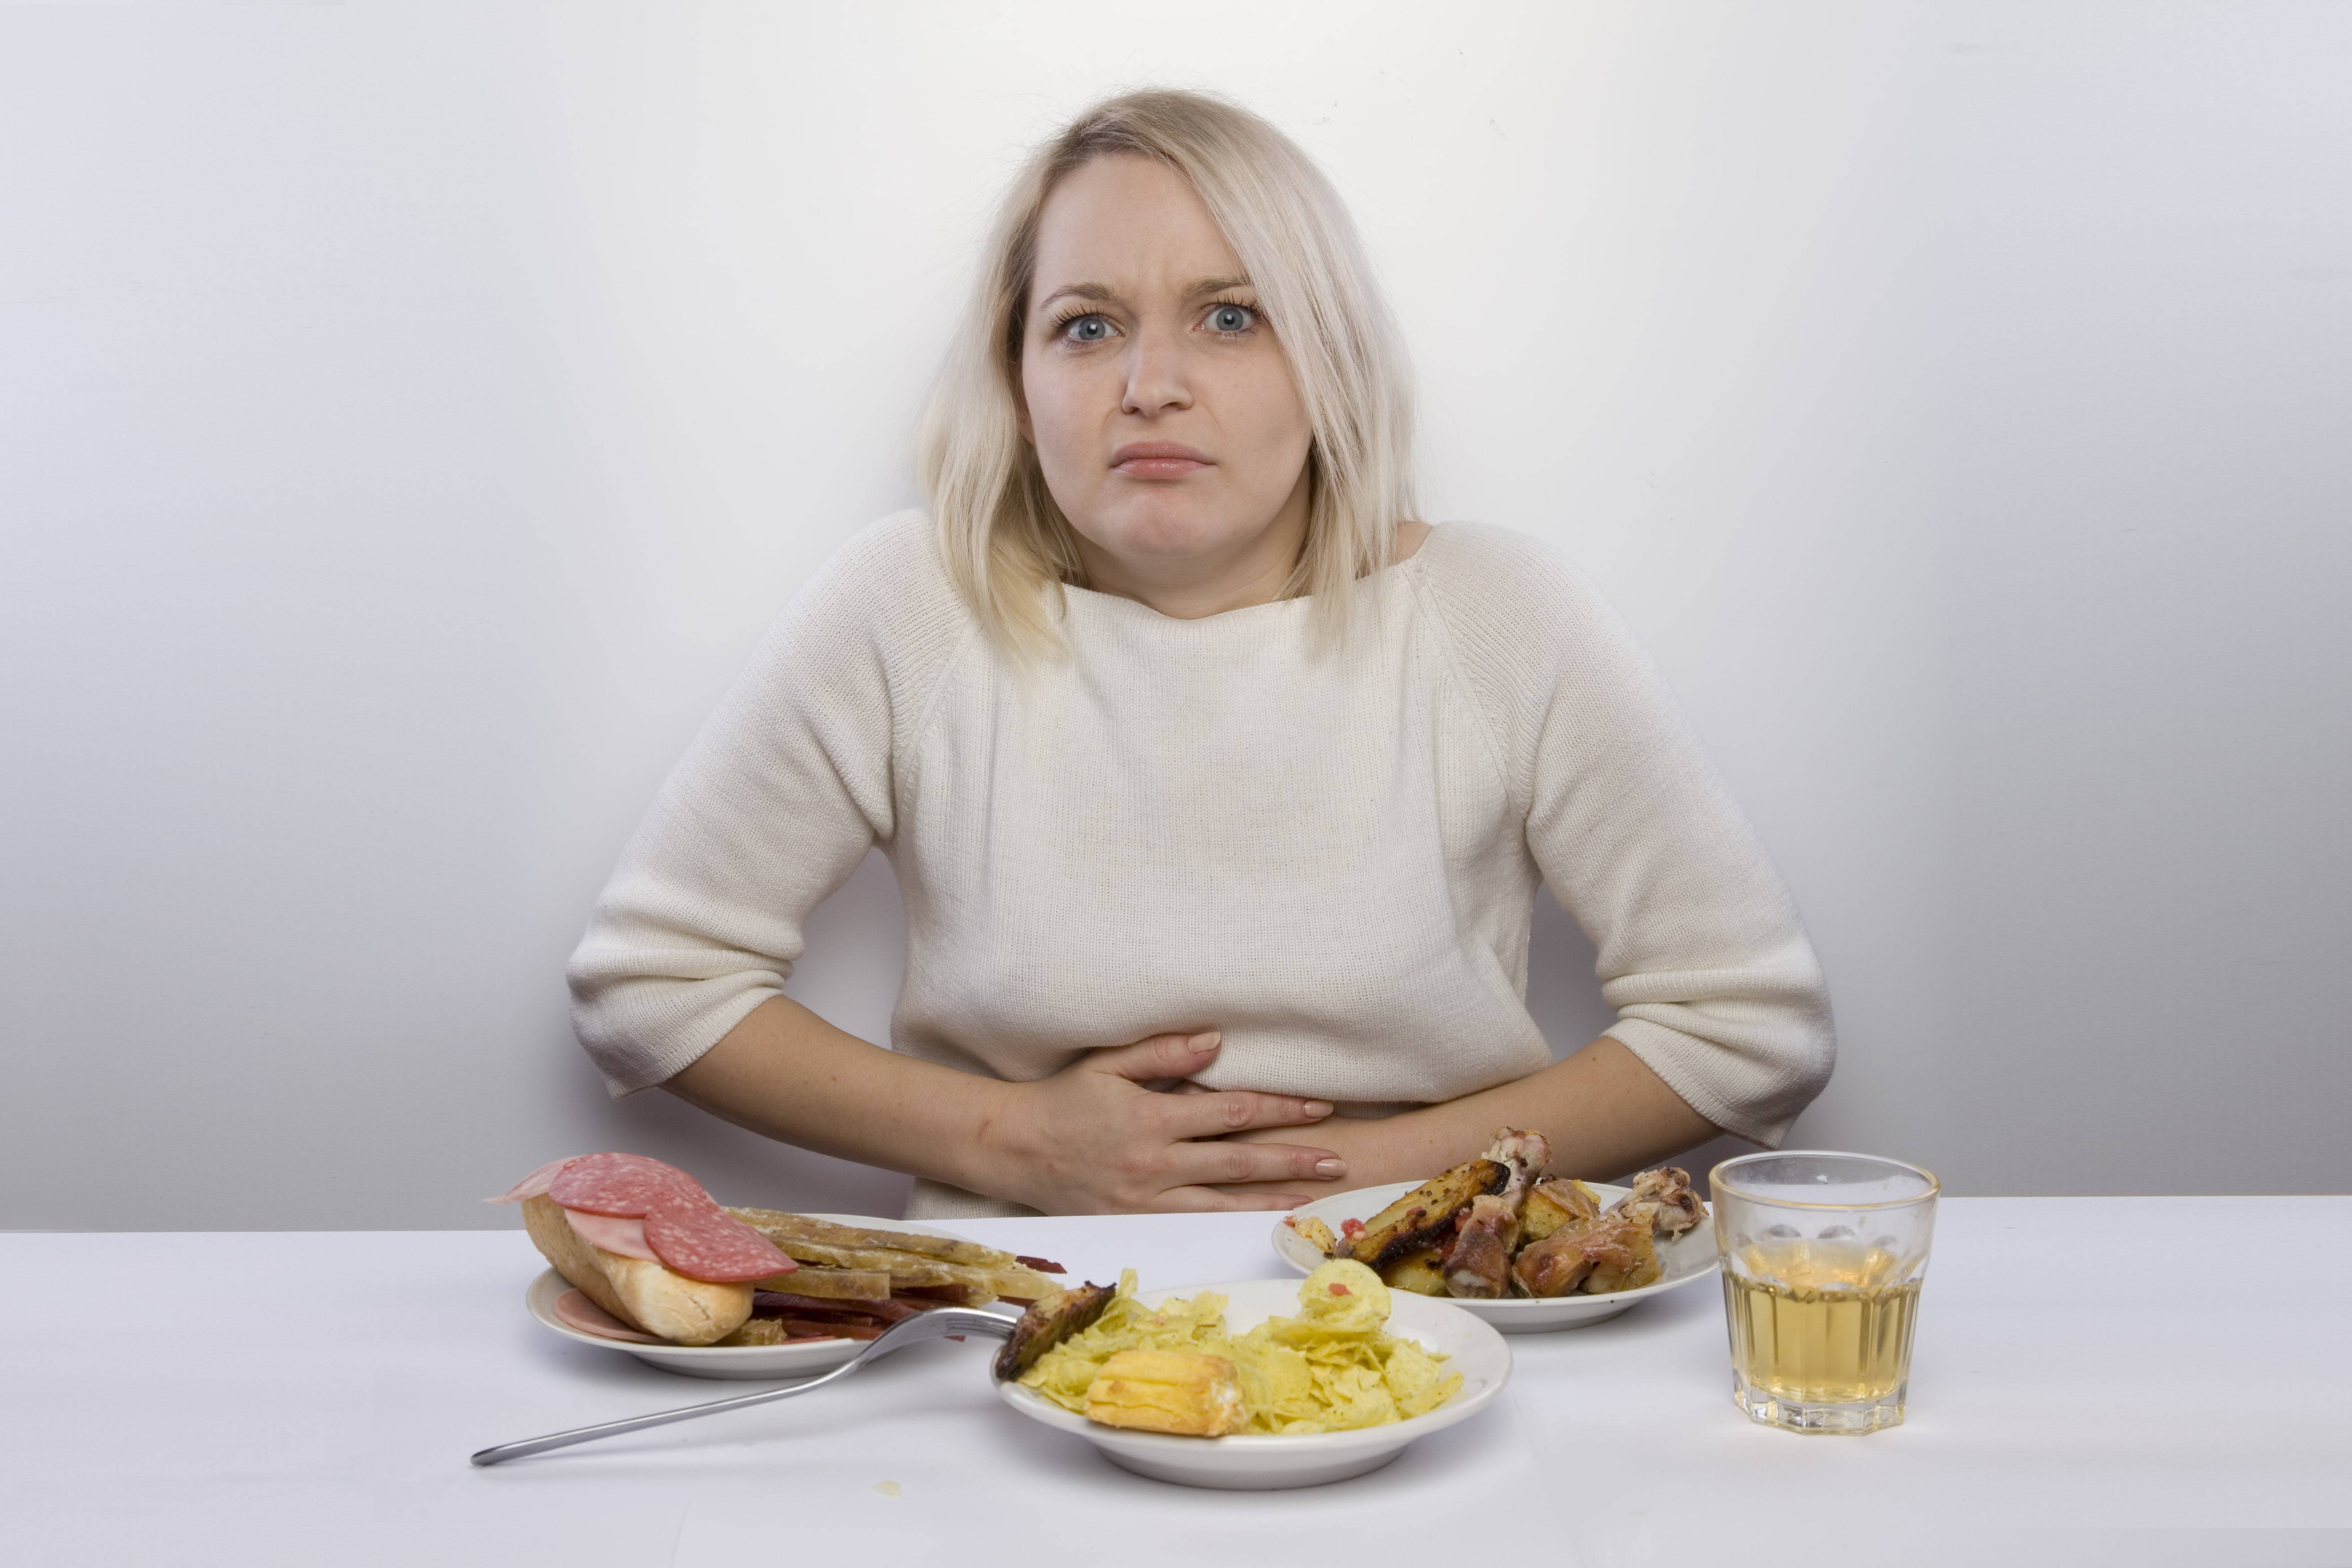 Голодные боли после приема пищи. Проблемы с пищеварением. Переедание пищи. Еда на женщине. Неправильное питание.